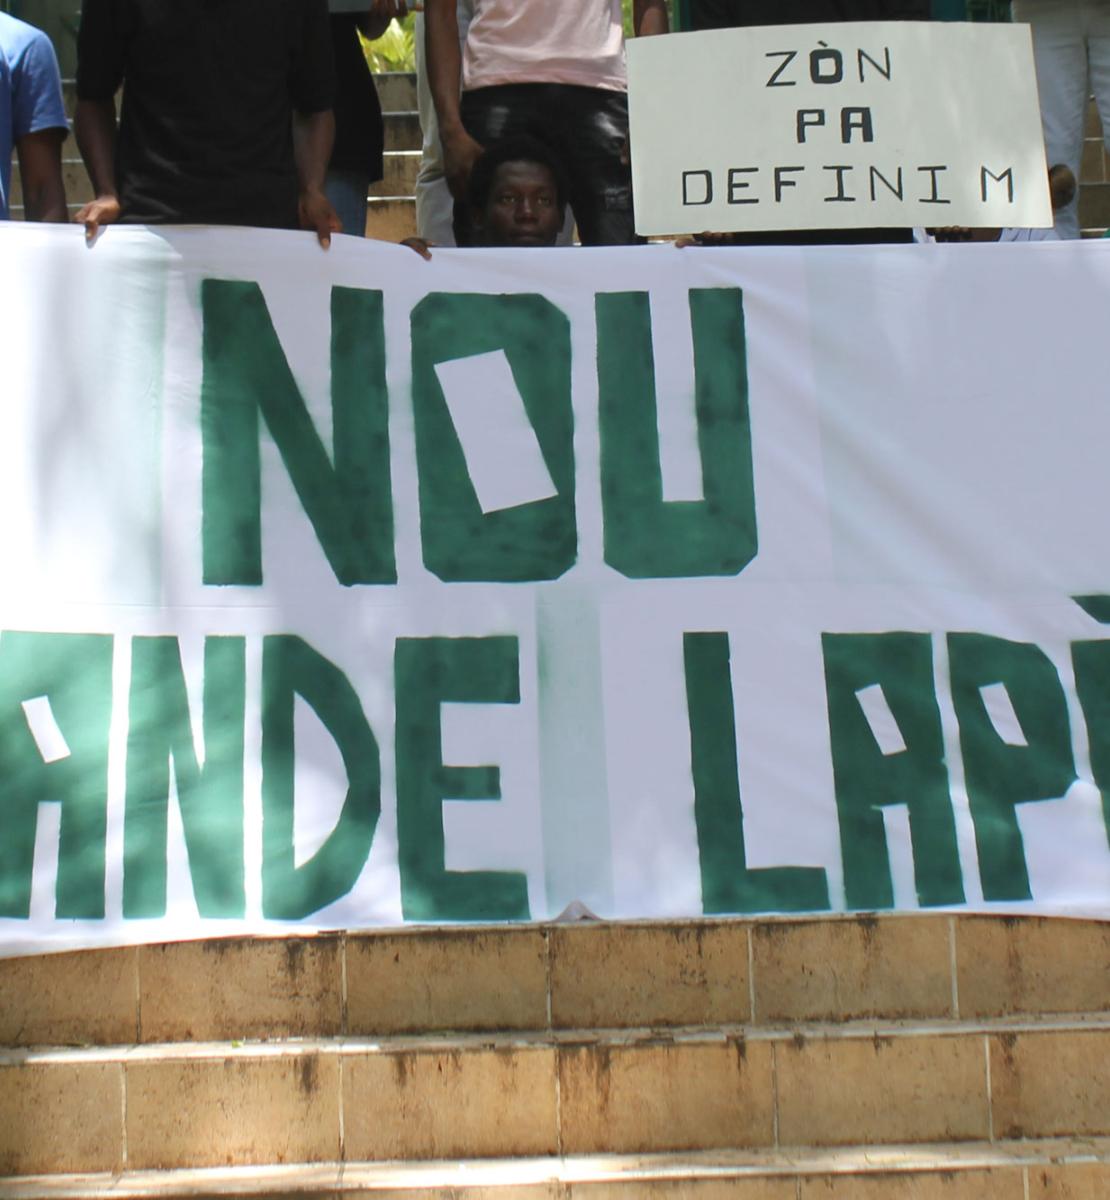 لافتة رفعها ناشطون شباب كُتب عليها: "نطالب بالسلام".